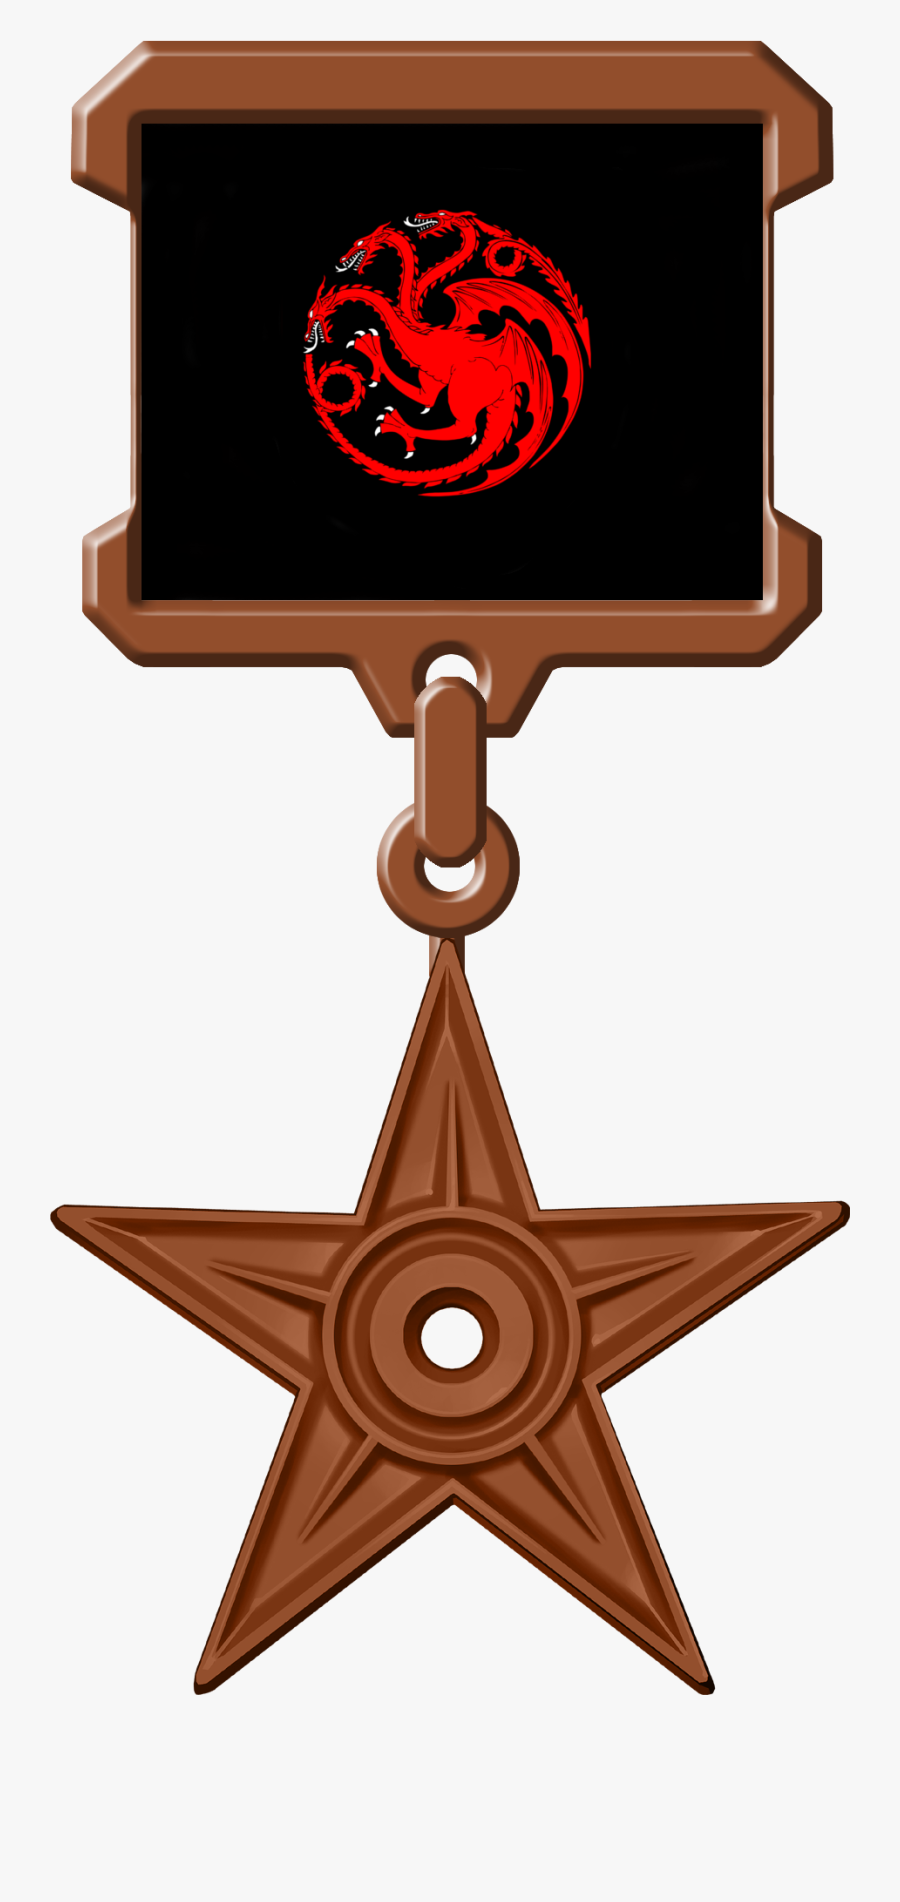 Got Targaryen Bronze Medal - All In One Religion Logos, Transparent Clipart